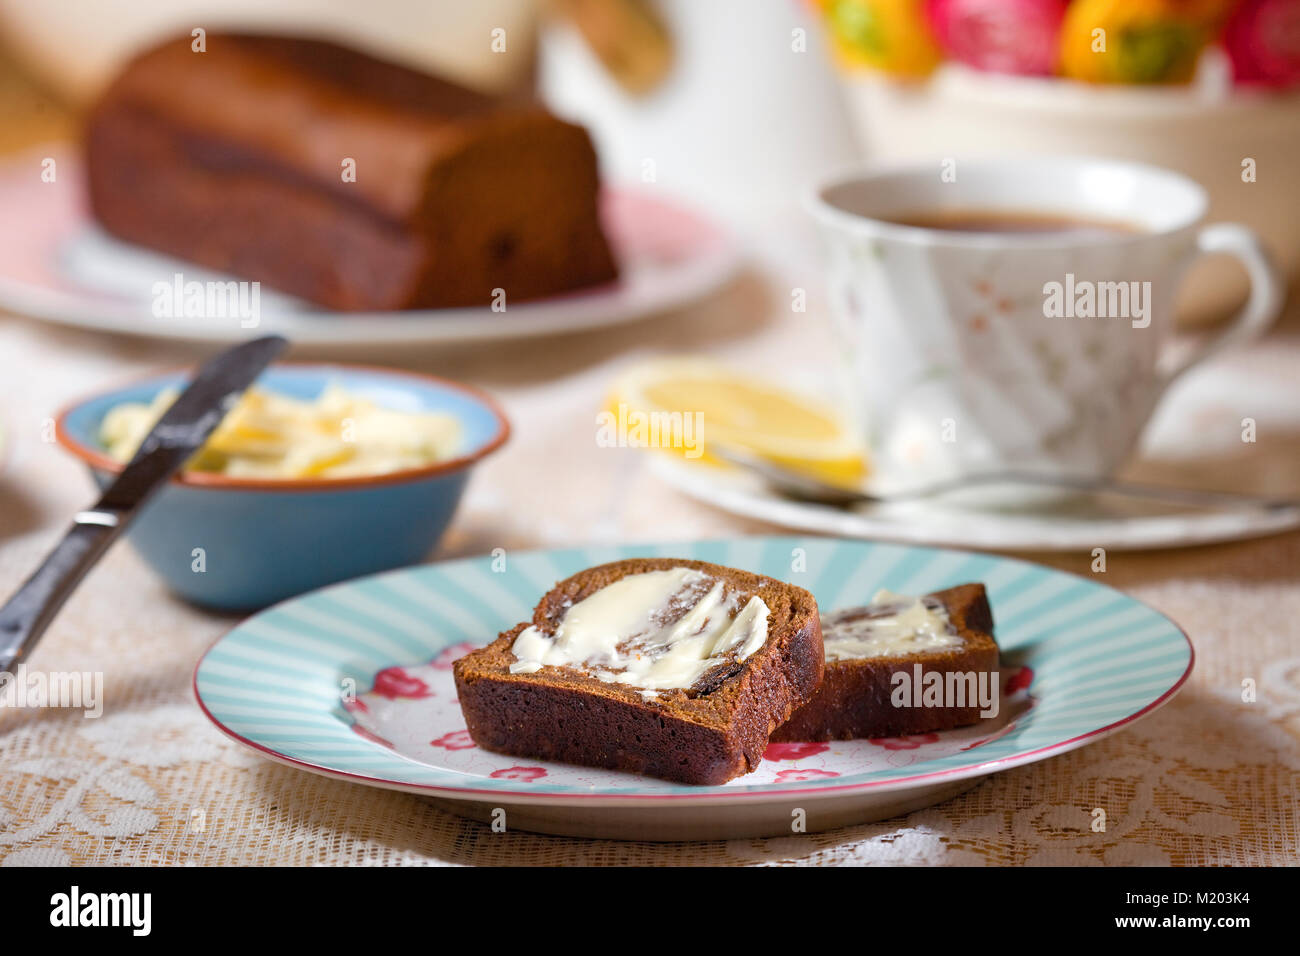 Tabelle Einstellung mit in Scheiben geschnittenen Malz Brot mit Butter und schwarzer Tee mit Zitrone Stockfoto